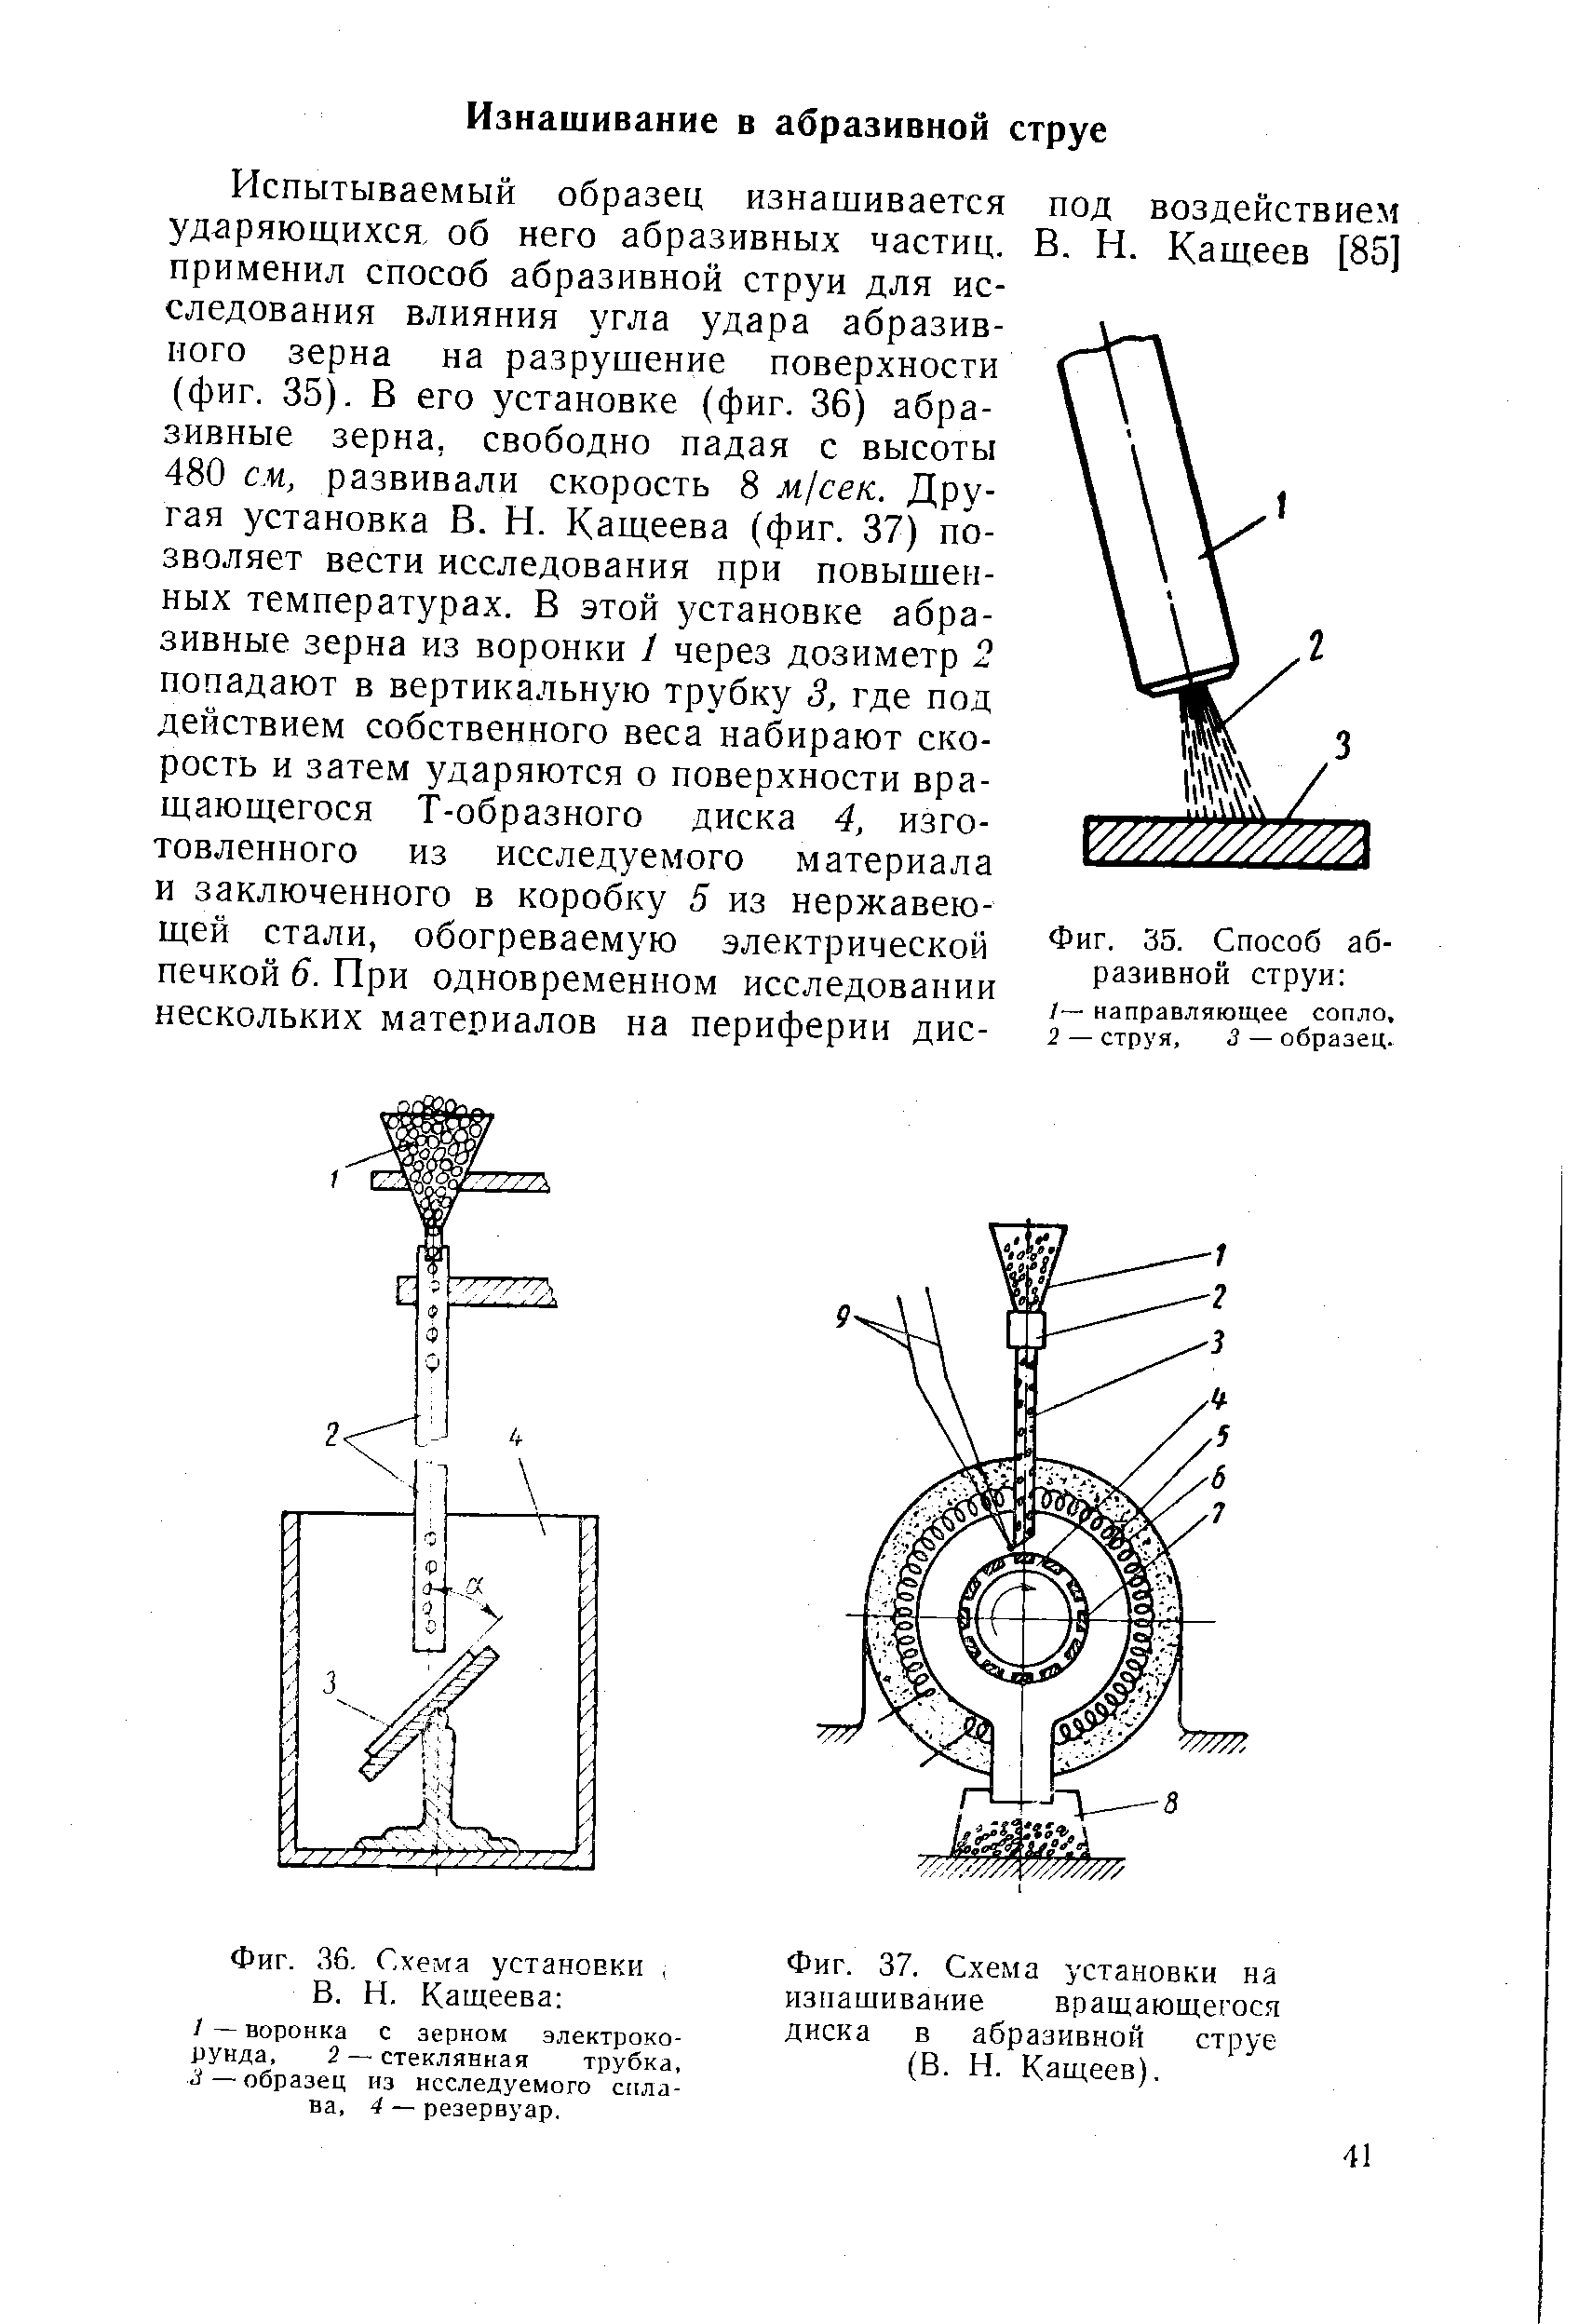 Фиг. 37. Схема установки на изнашивание вращающегося диска в абразивной струе (В. Н. Кащеев).
